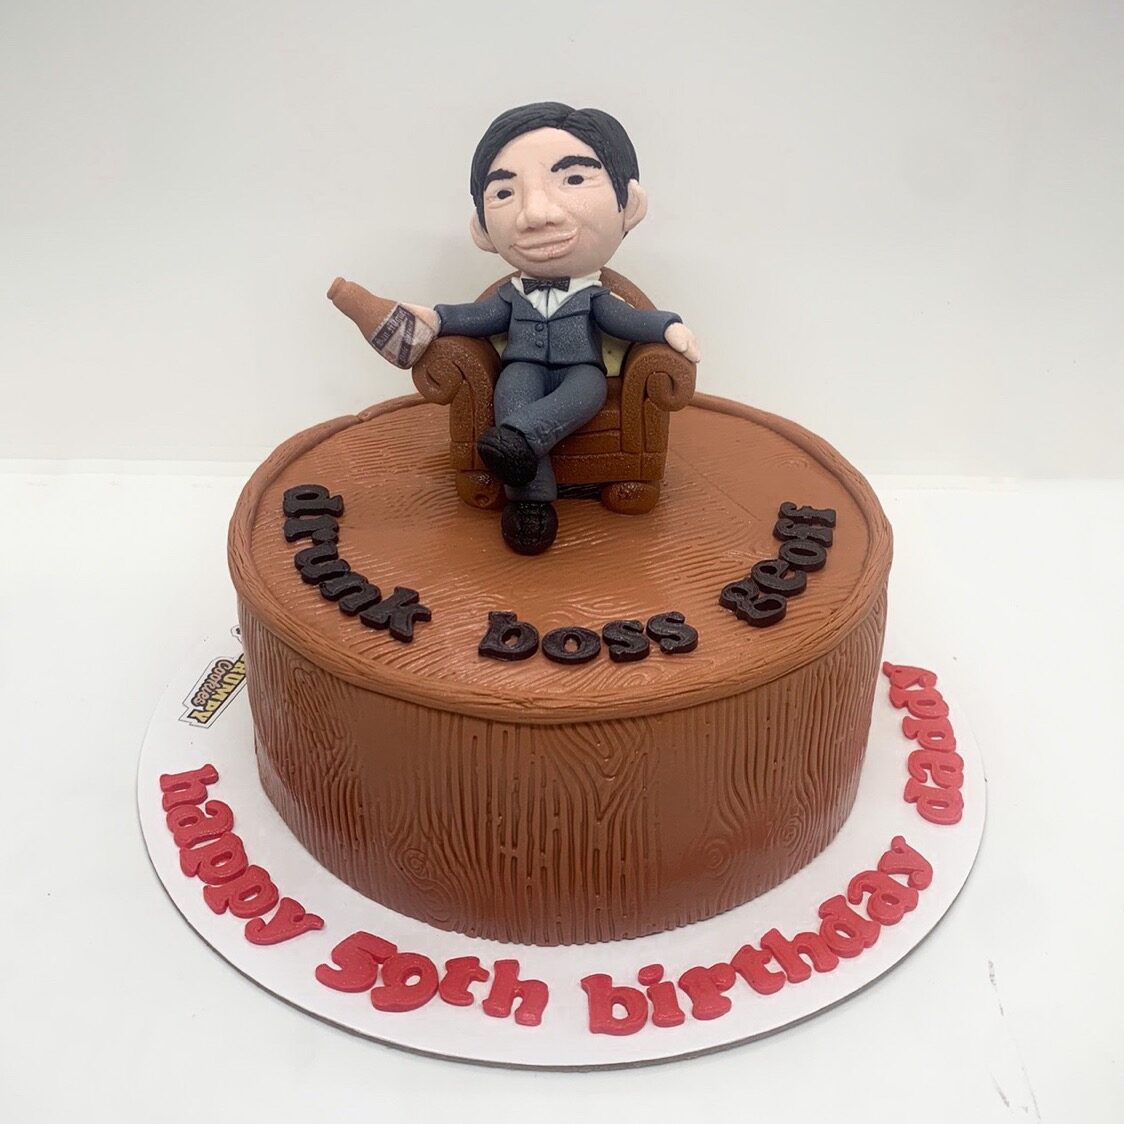 Best Boss Birthday Cake | Cake Design For Boss Farewell | Yummy cake